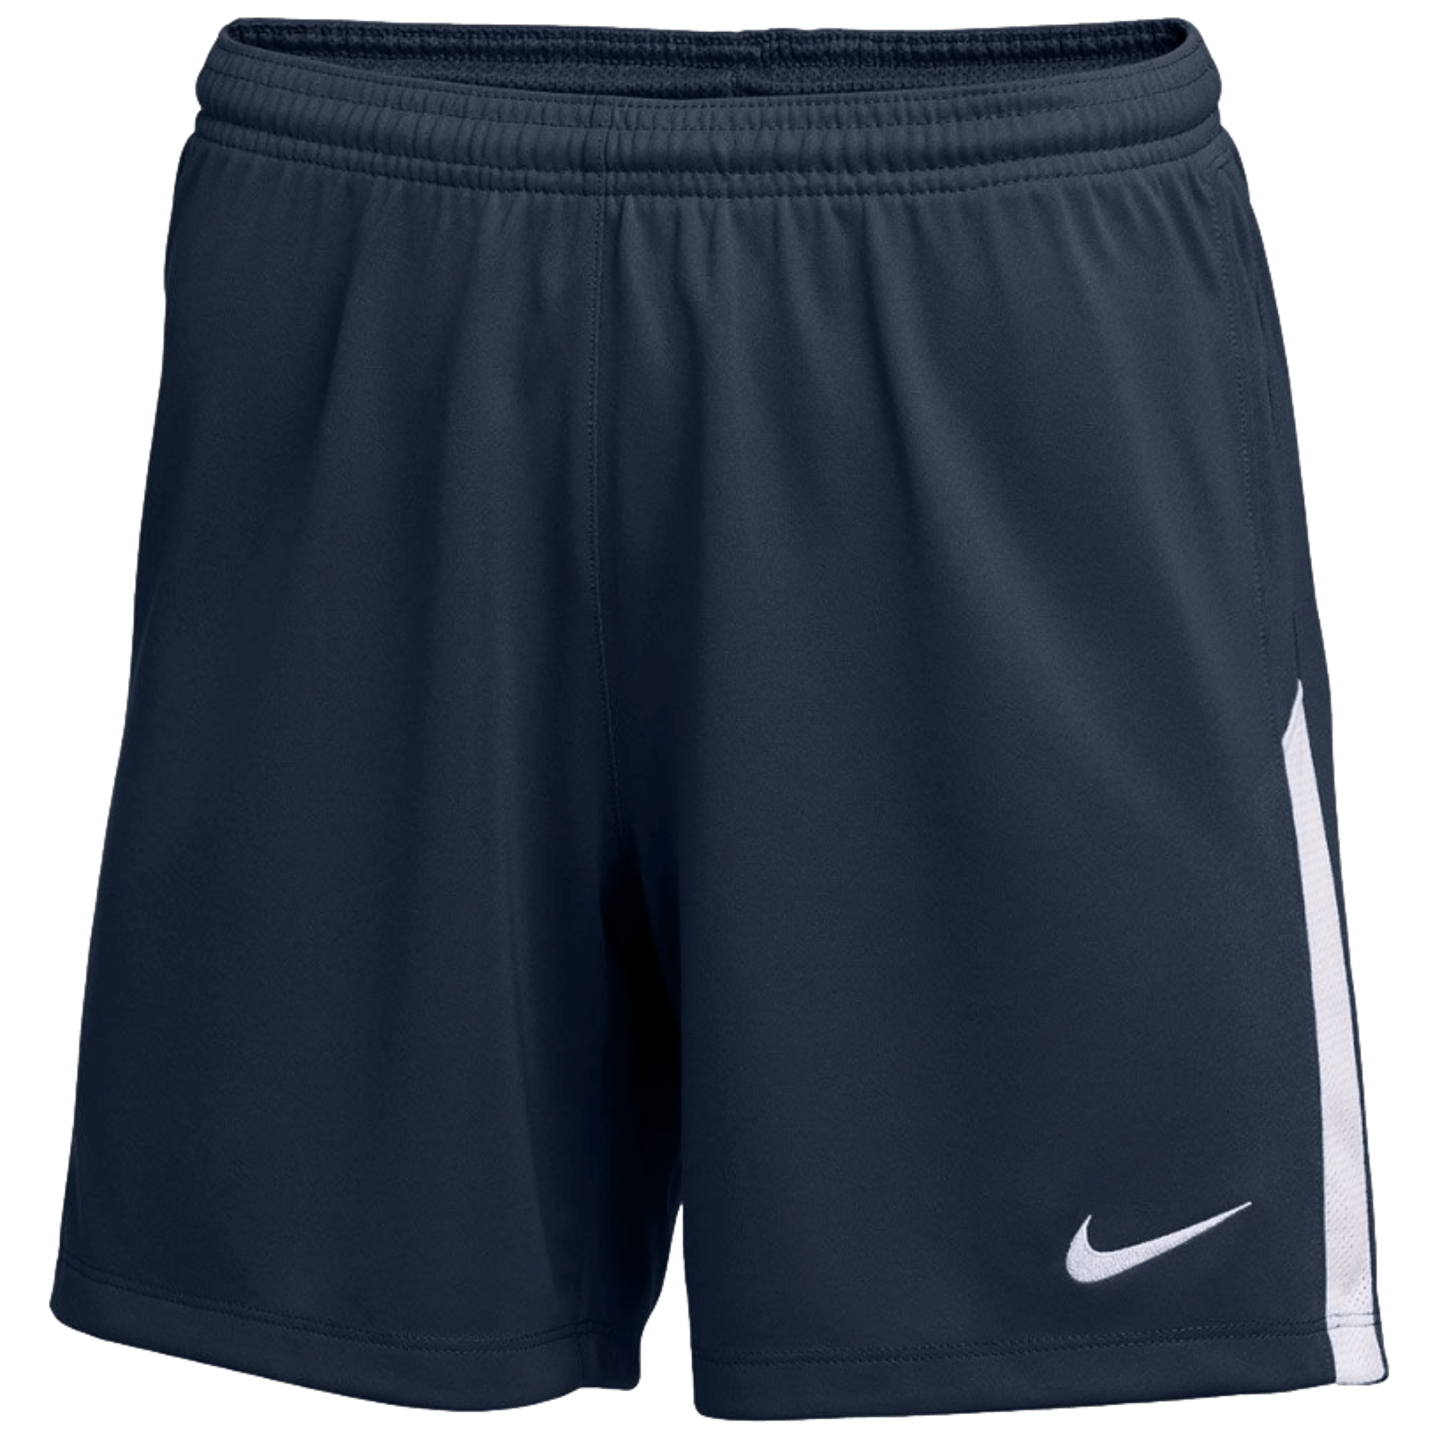 Pantalones cortos Nike Dry League Knit ll para mujer